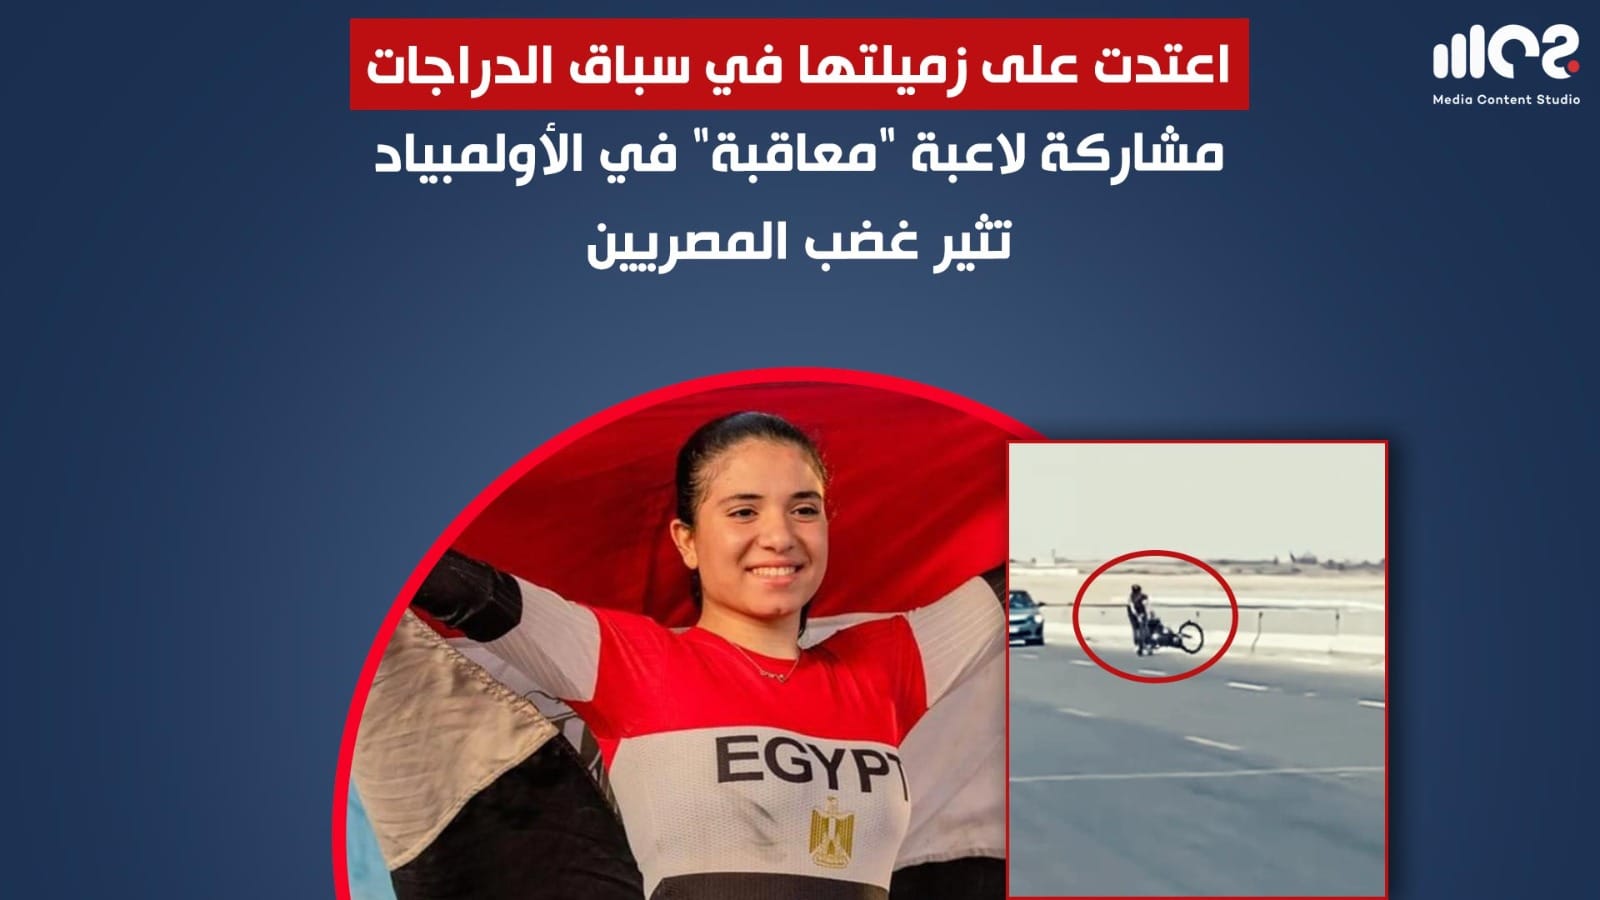 مشاركة لاعبة معاقبة في الأولمبياد تثير غضب المصريين